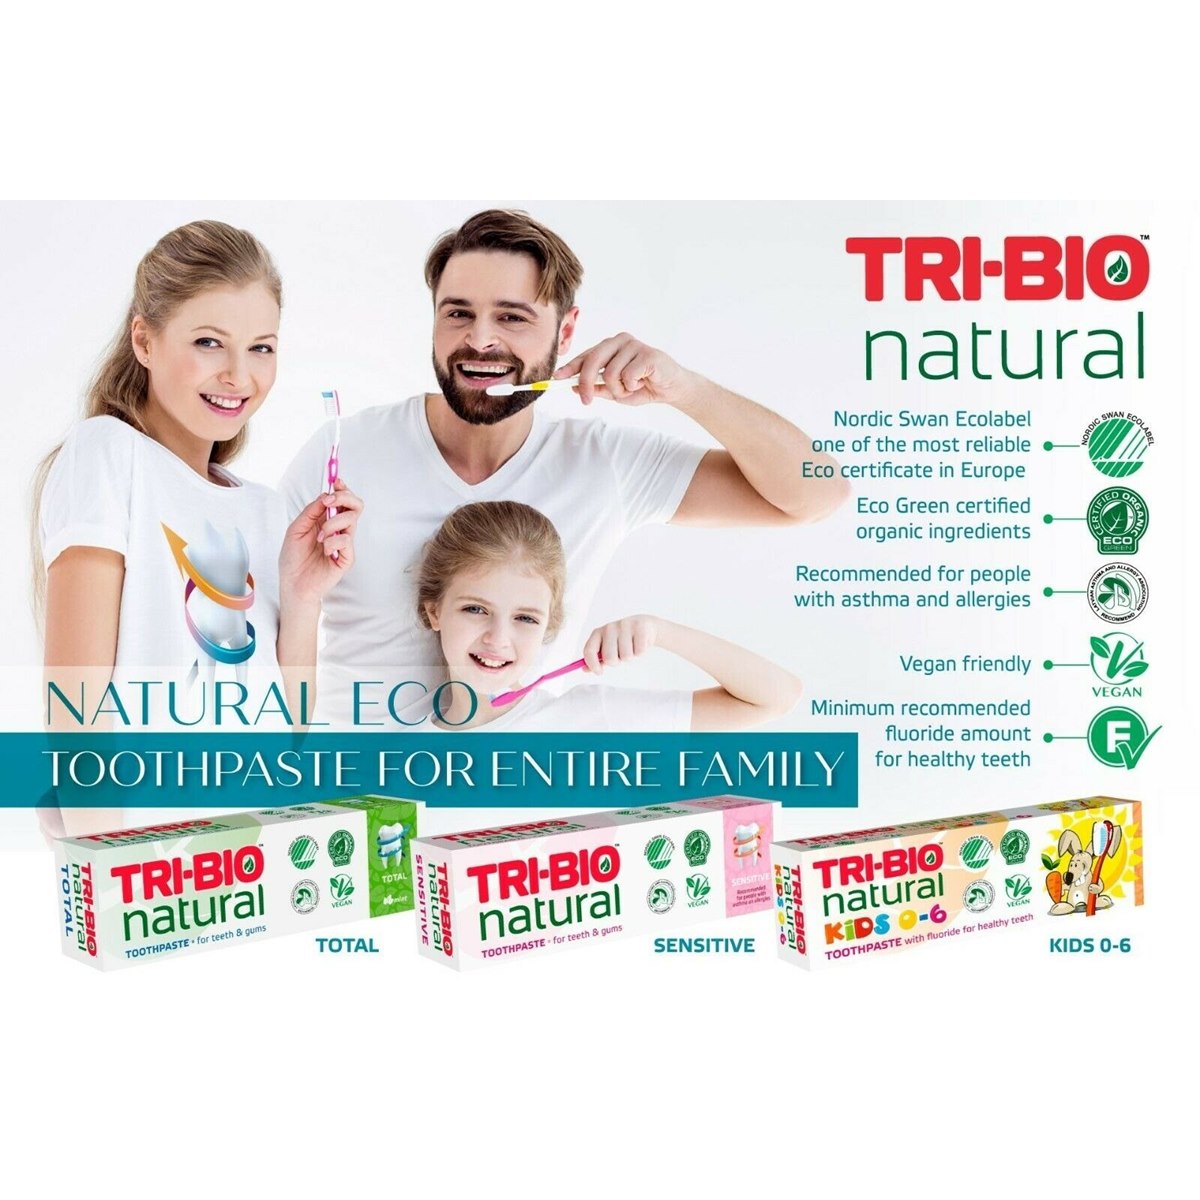 Where to Buy Tri-Bio Toothpaste